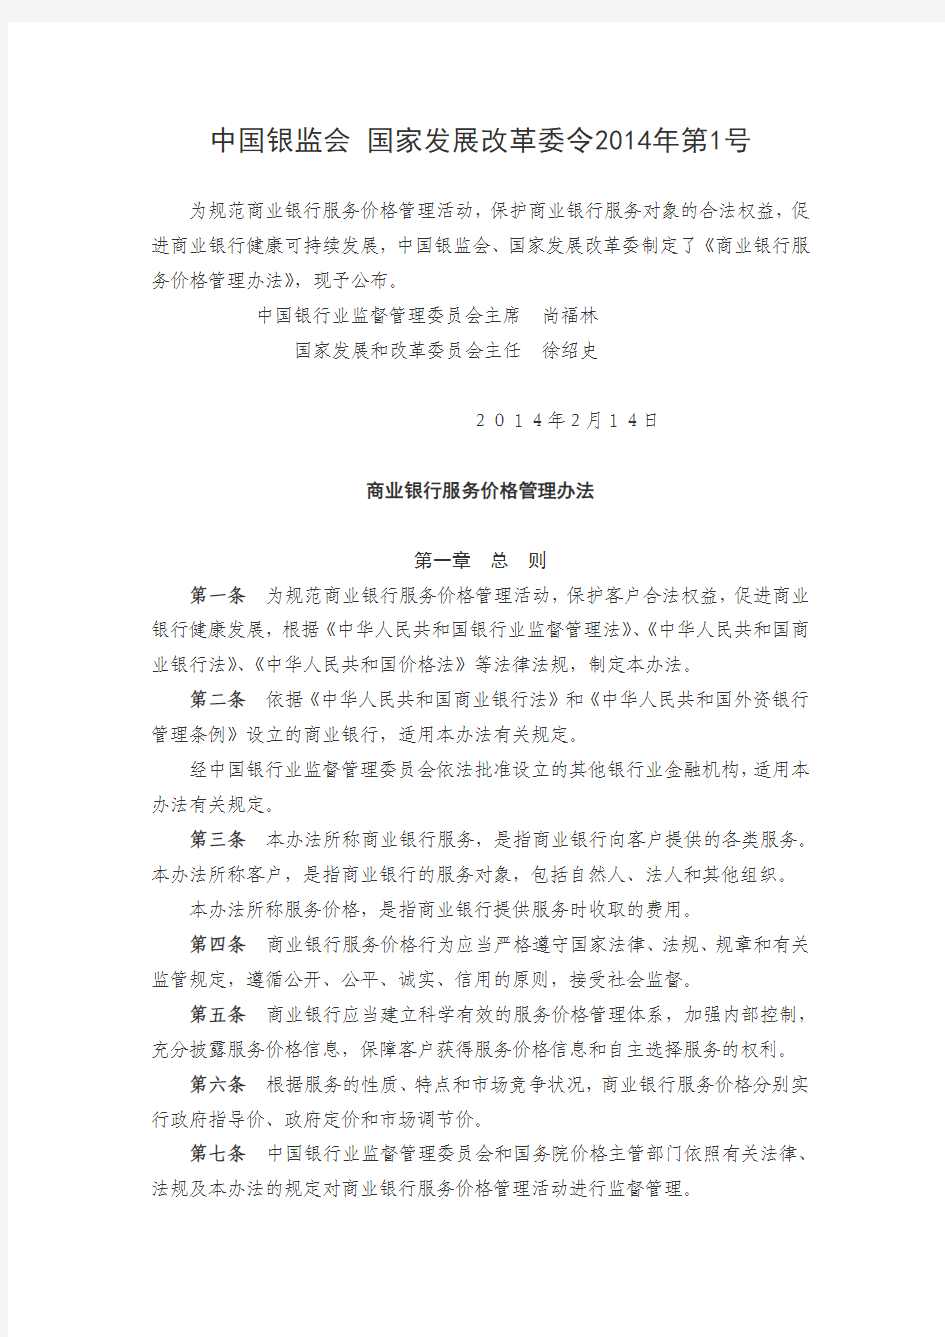 20140801 中国银监会 国家发展改革委商业银行服务价格管理办法(令2014年第1号)(3)